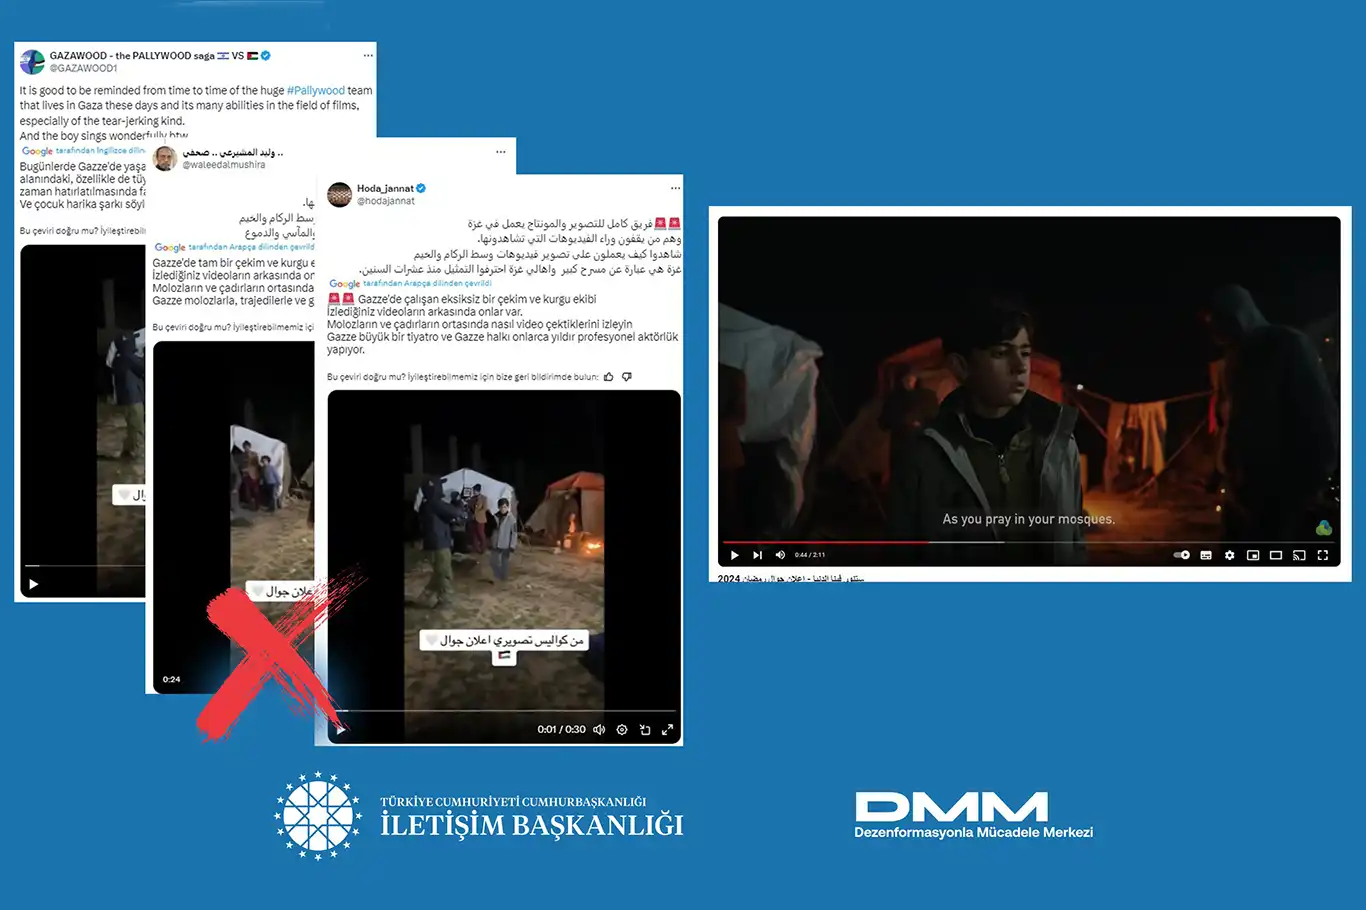 Siyonist işgalciler, Gazze'deki görüntülerle ilgili dezenformasyon kampanyası yürütüyor